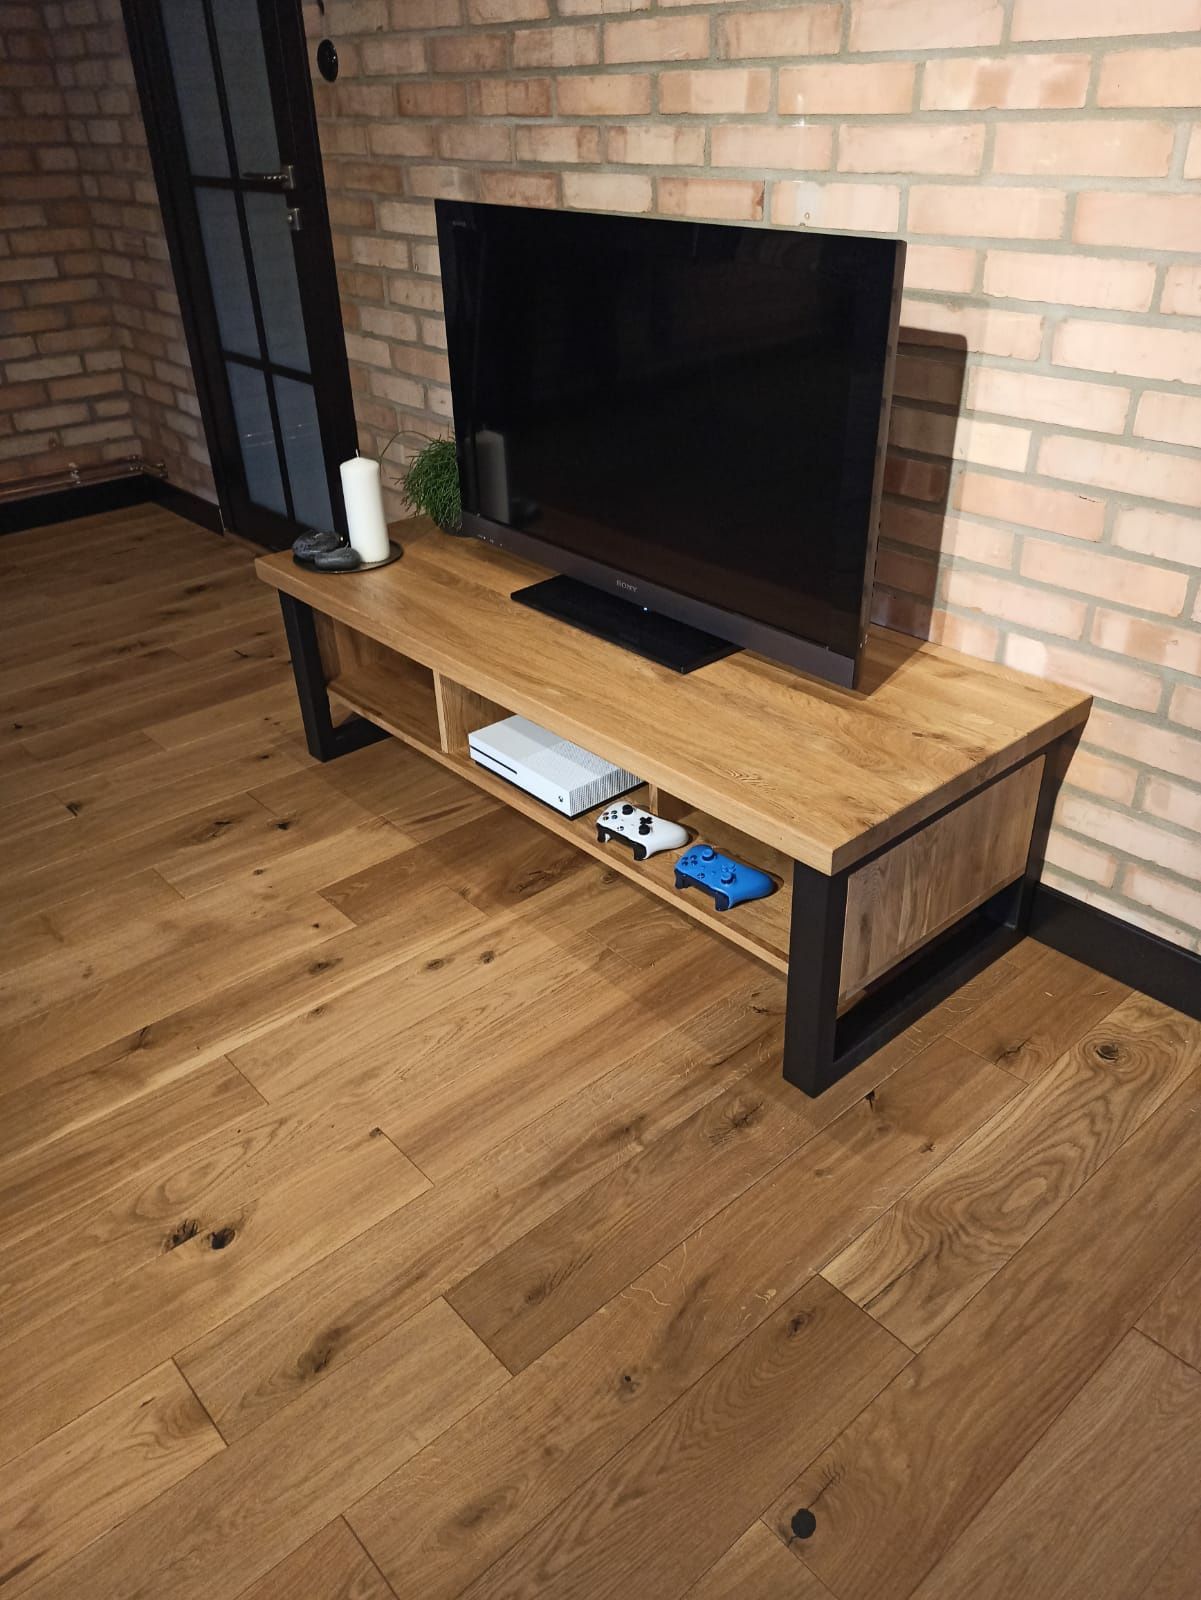 Szafka drewniana RTV dębowa stolik kawowy lity loft meble industrialne